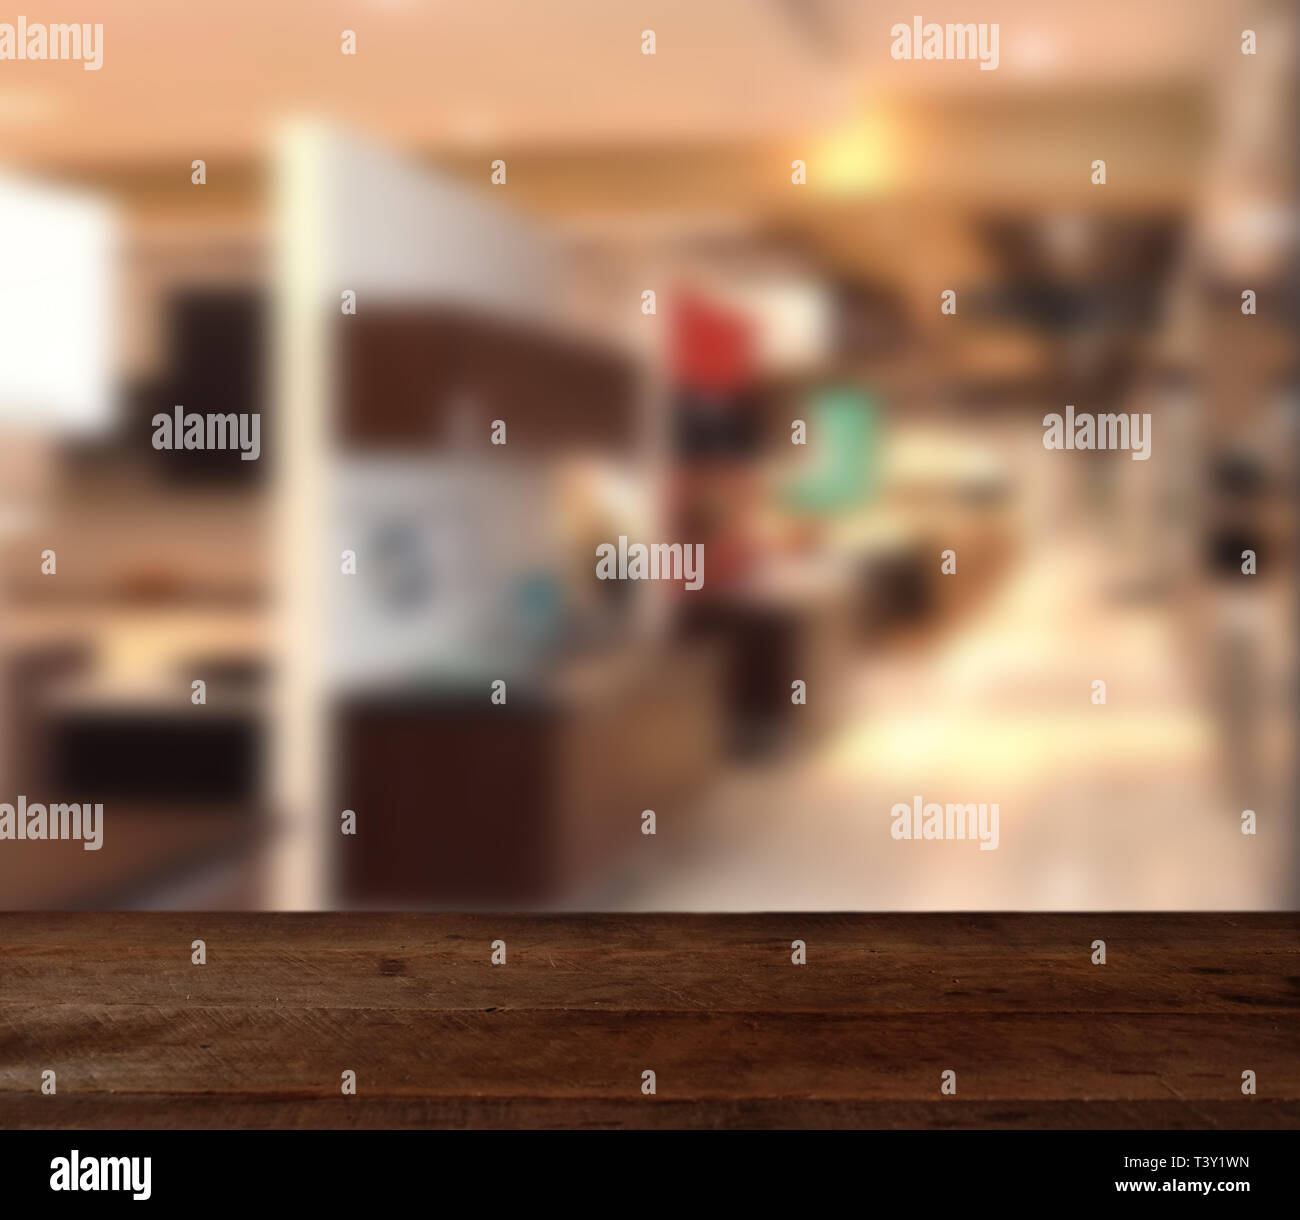 Holz Tisch auf Blur modernes Wohnzimmer innen Hintergrund - können für die Anzeige verwendet oder Montage ihrer Produkte Stockfoto